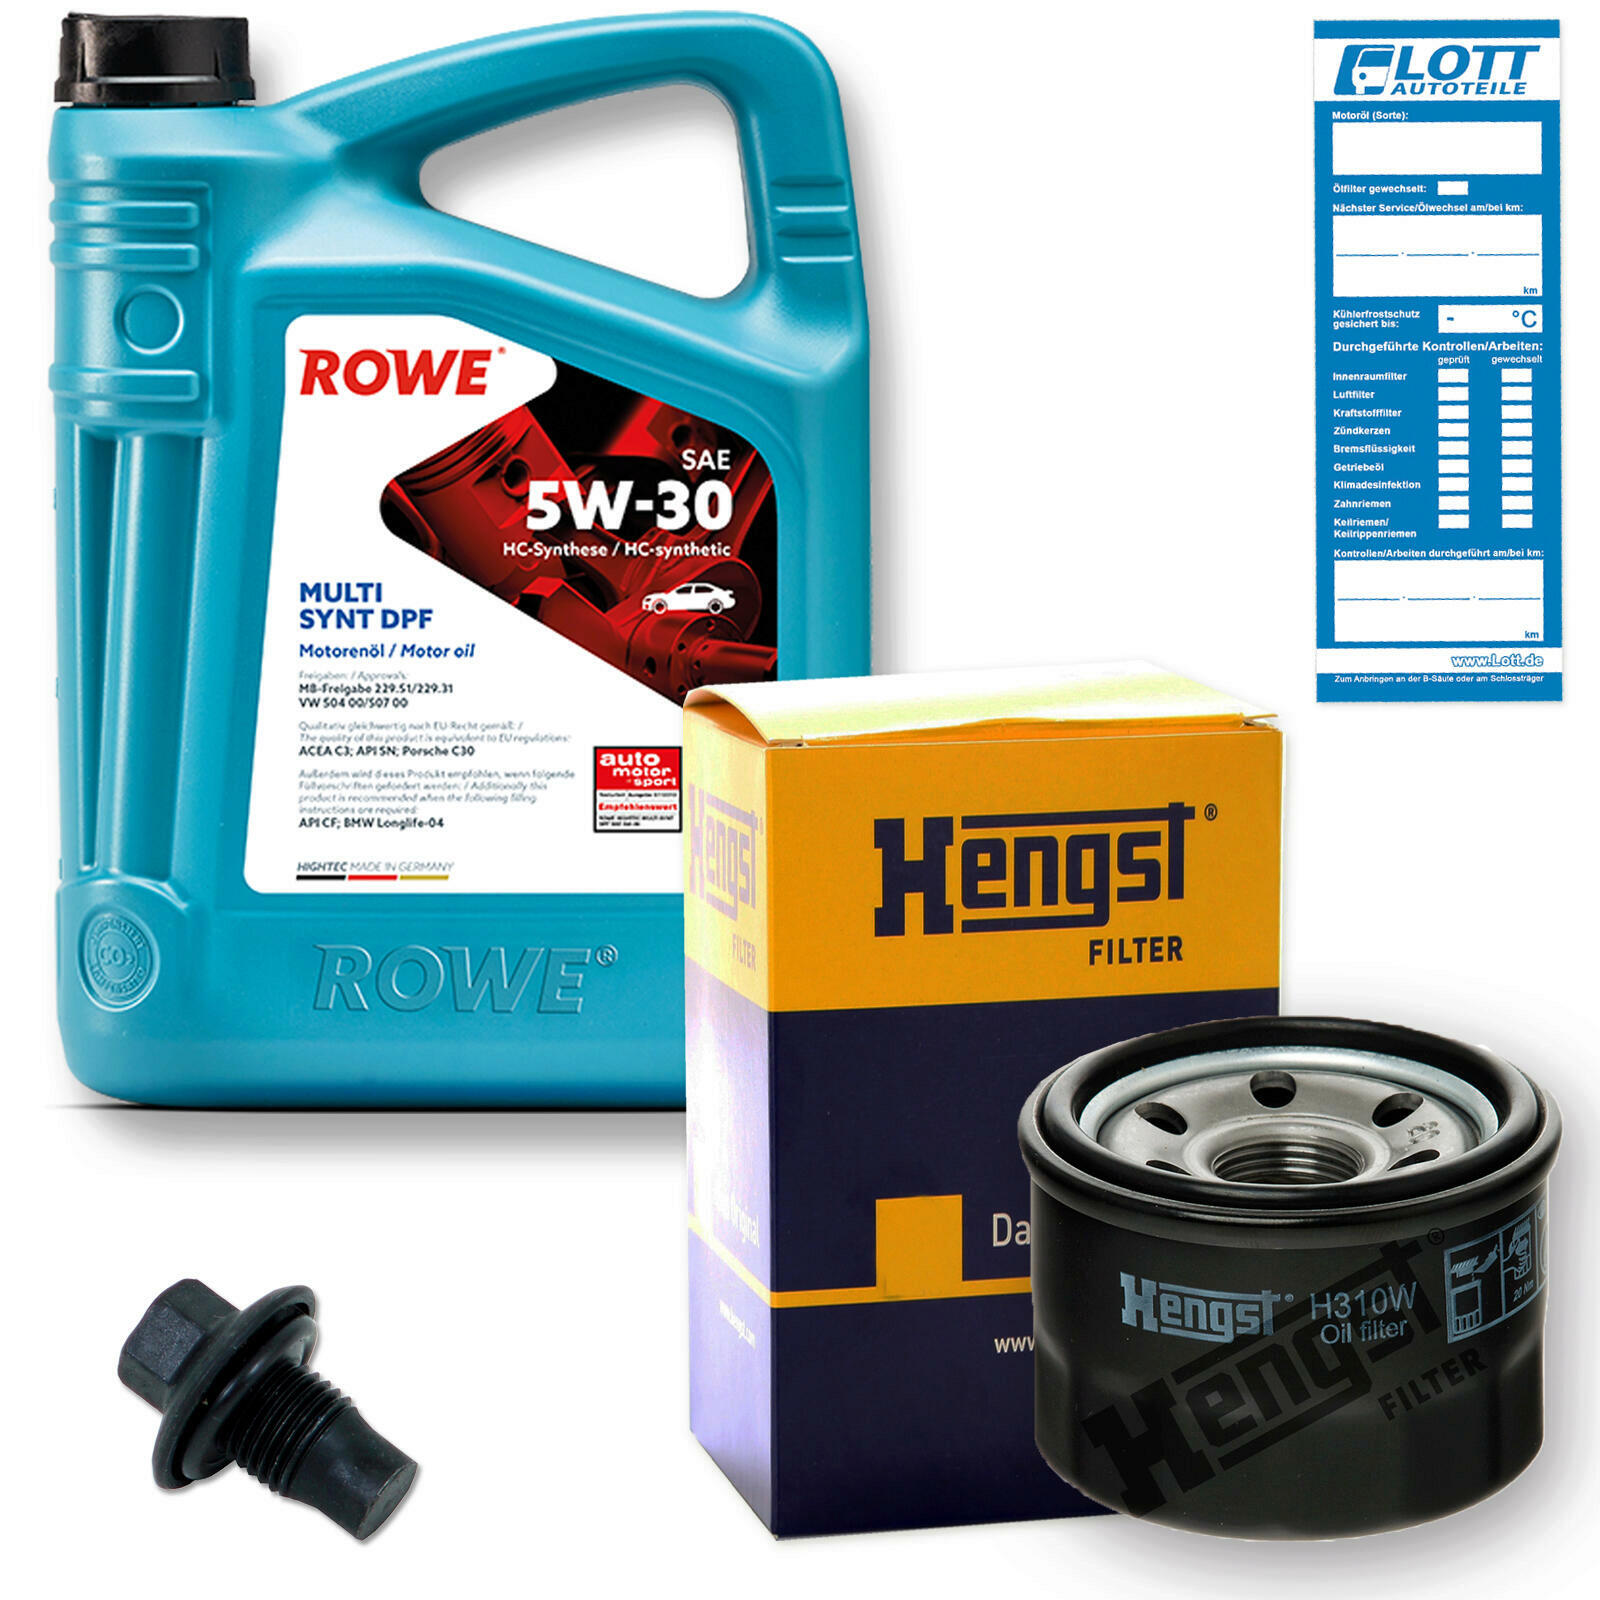 Rowe Inspektionskit Motoröl + Ölfilter + Ablassschraube